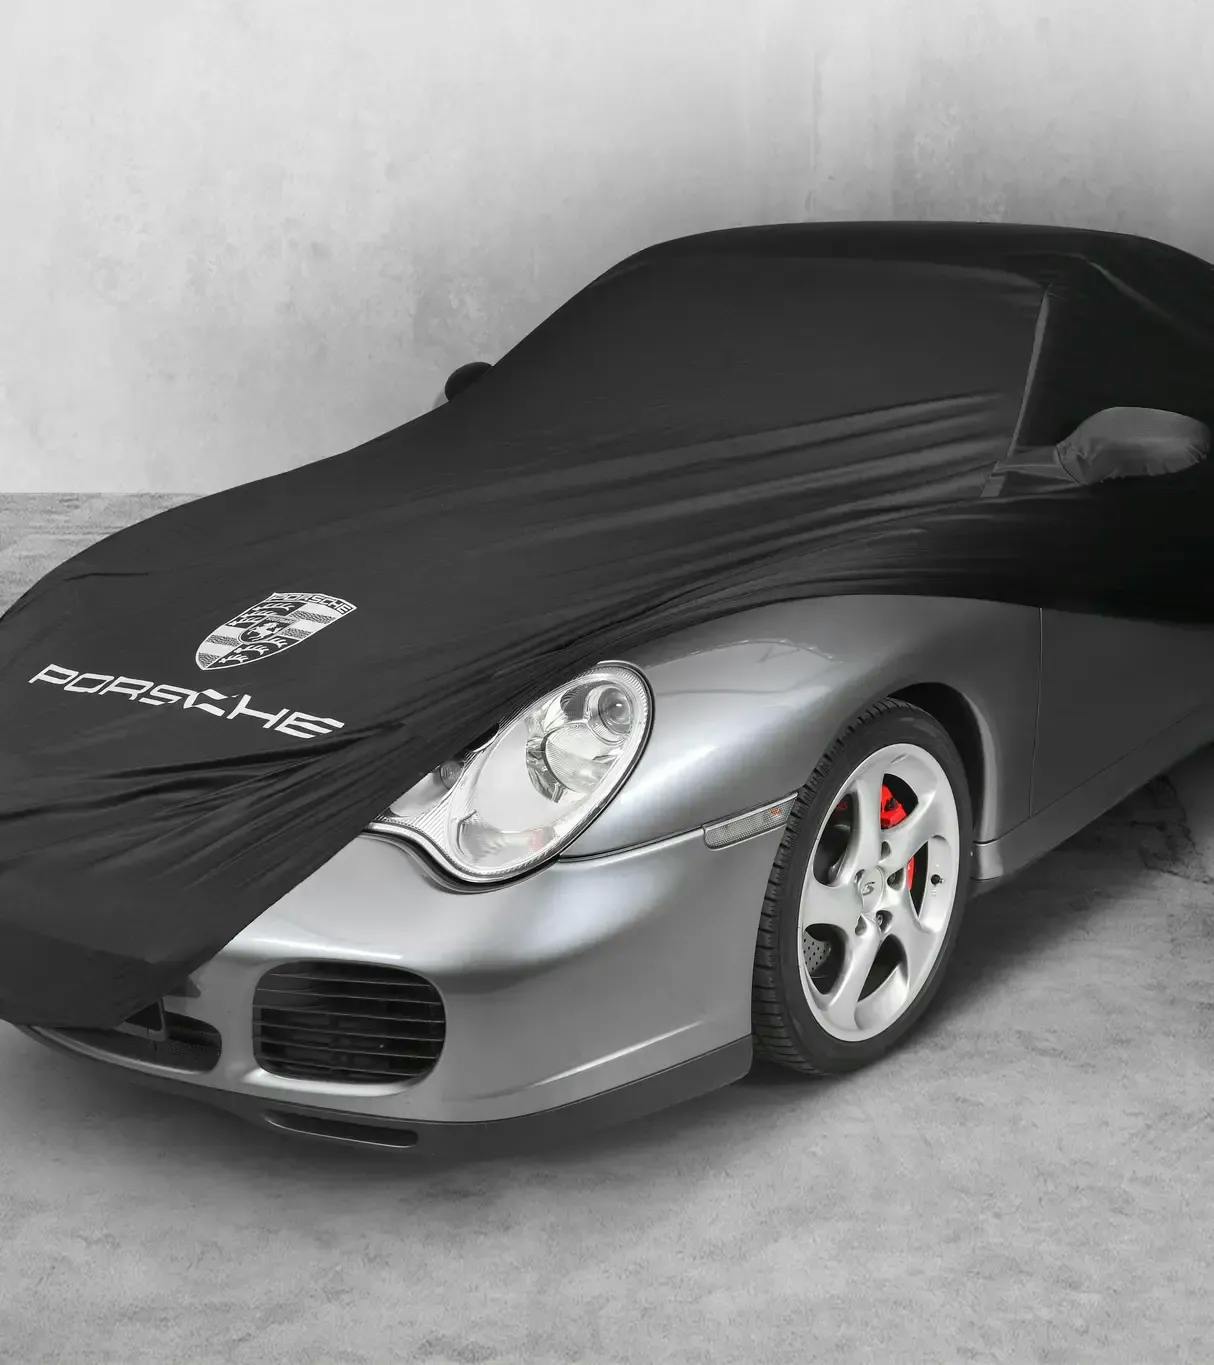 Funda protectora del vehículo negra para Porsche 996 sin Aero Kit 2